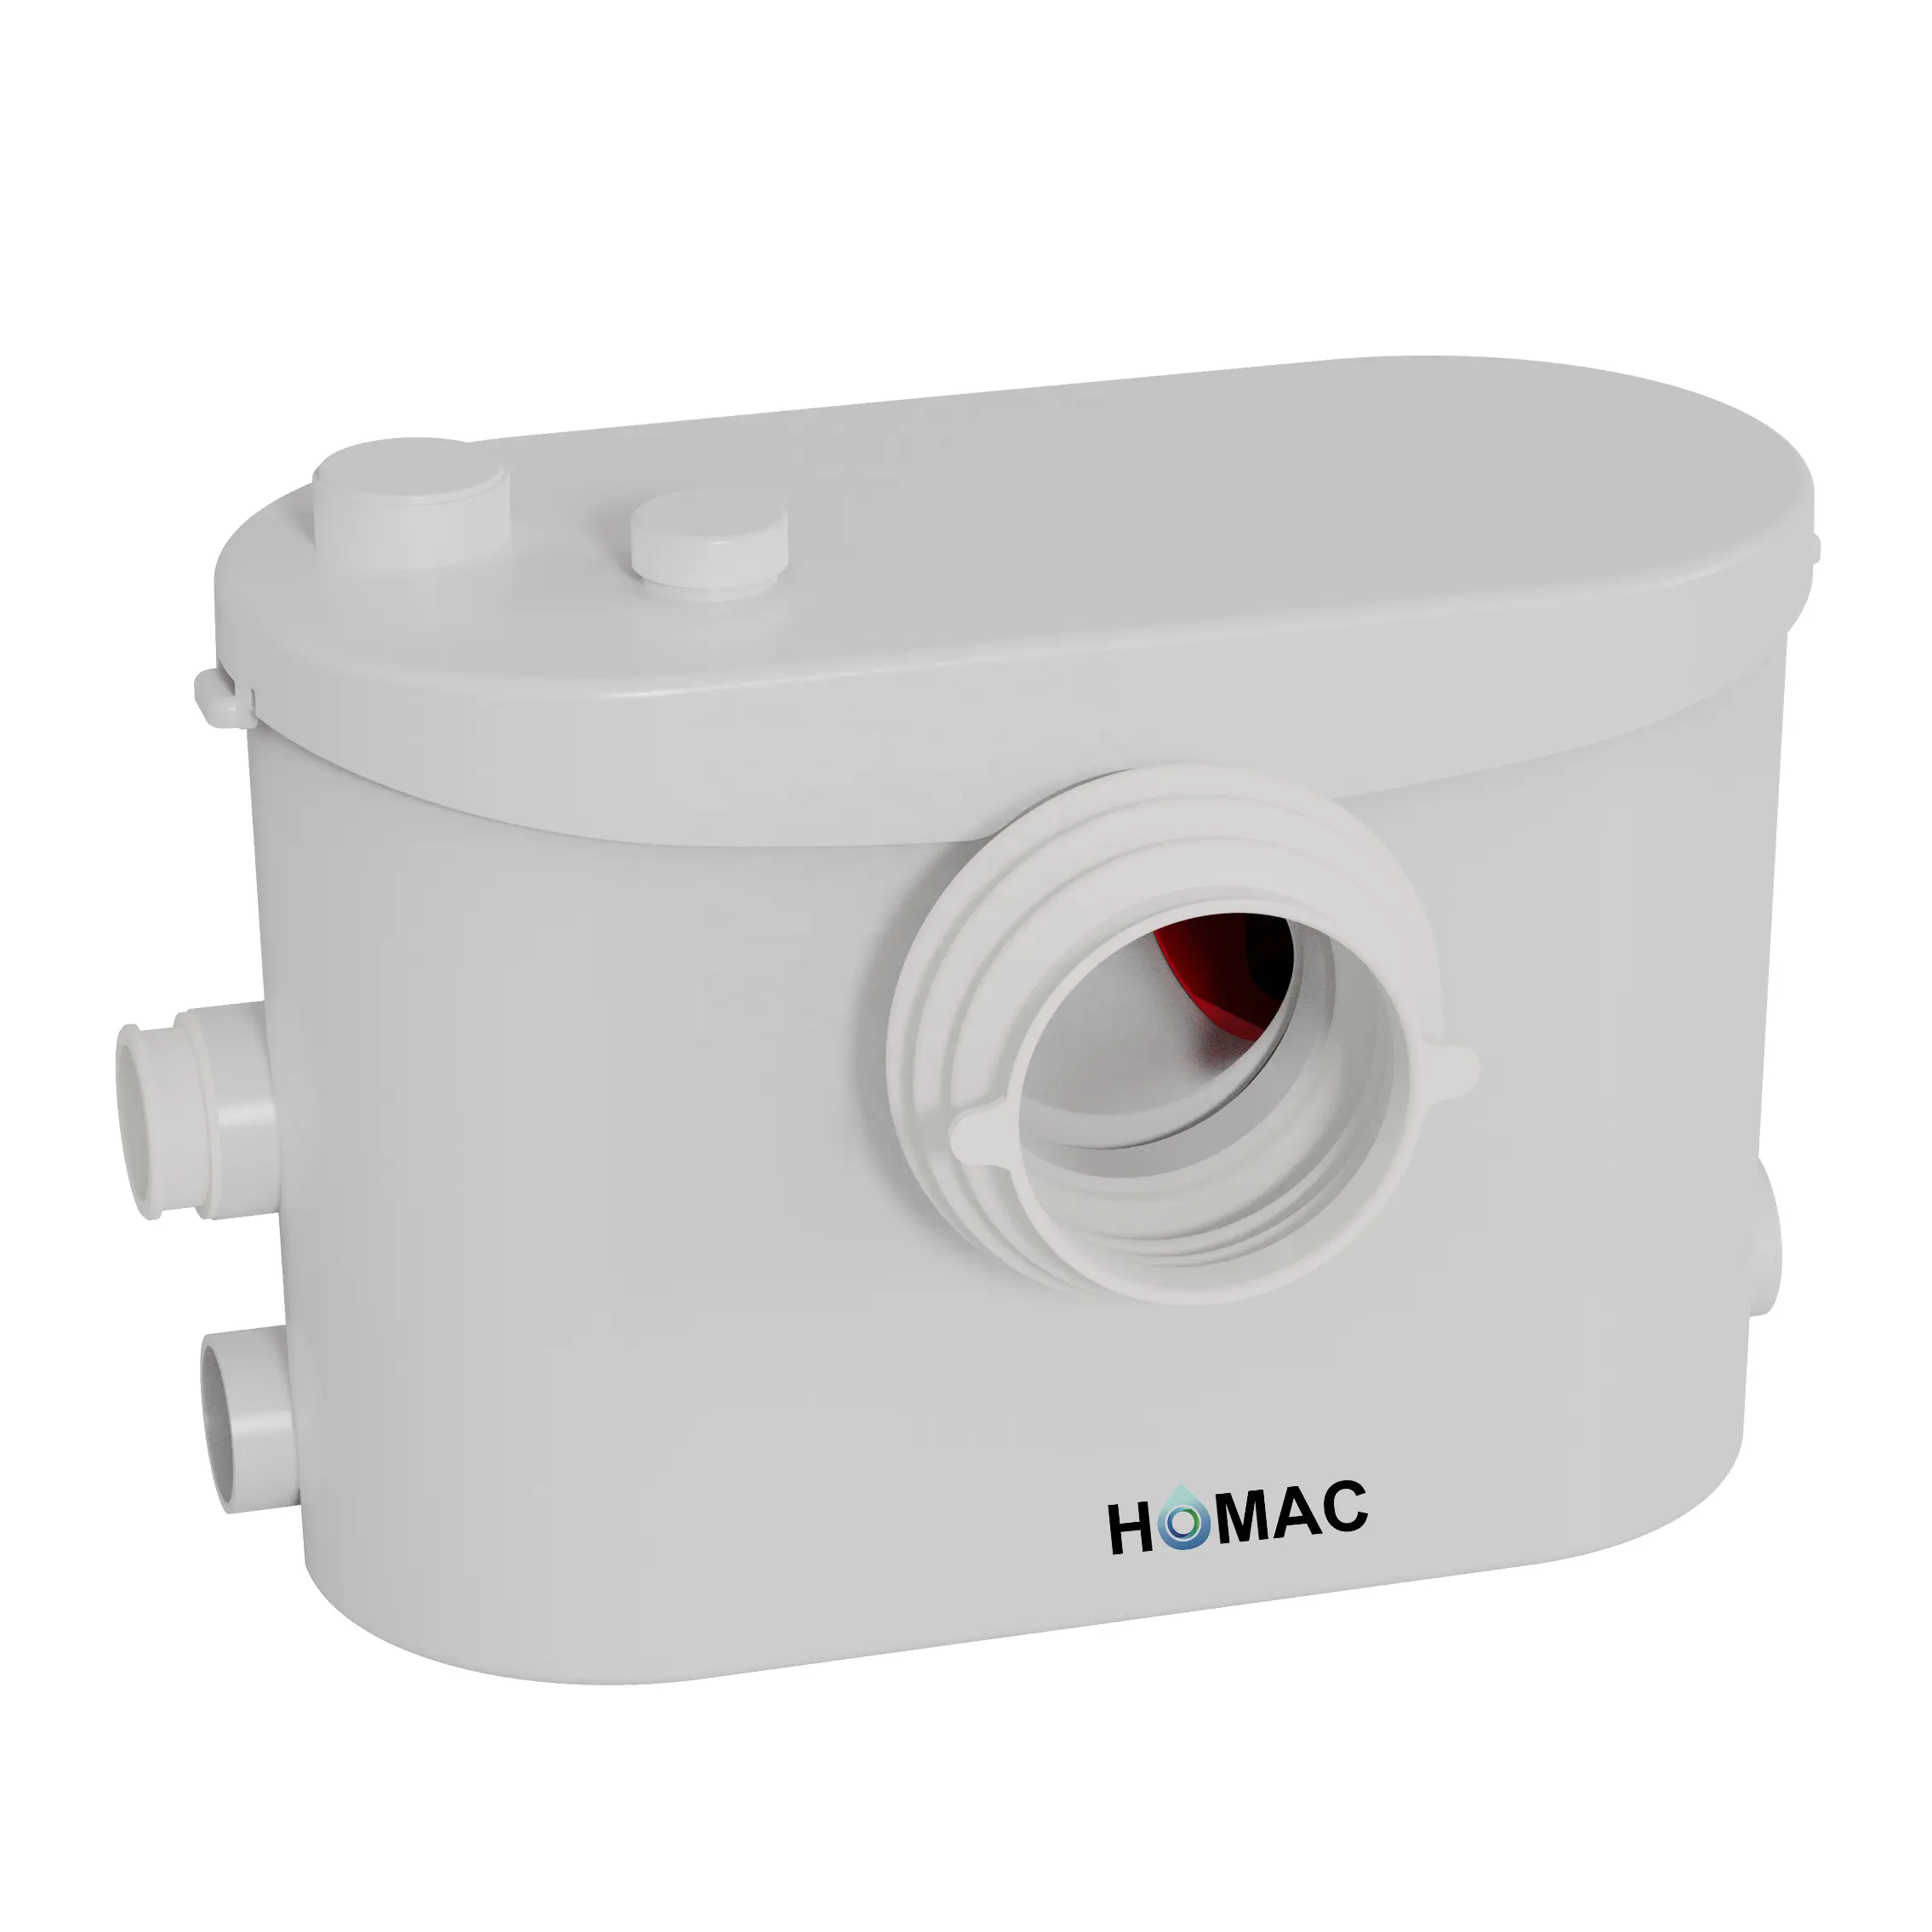 Homac 400-V1 (4 in 1) ปั๊มน้ำเสียสำหรับห้องน้ำ